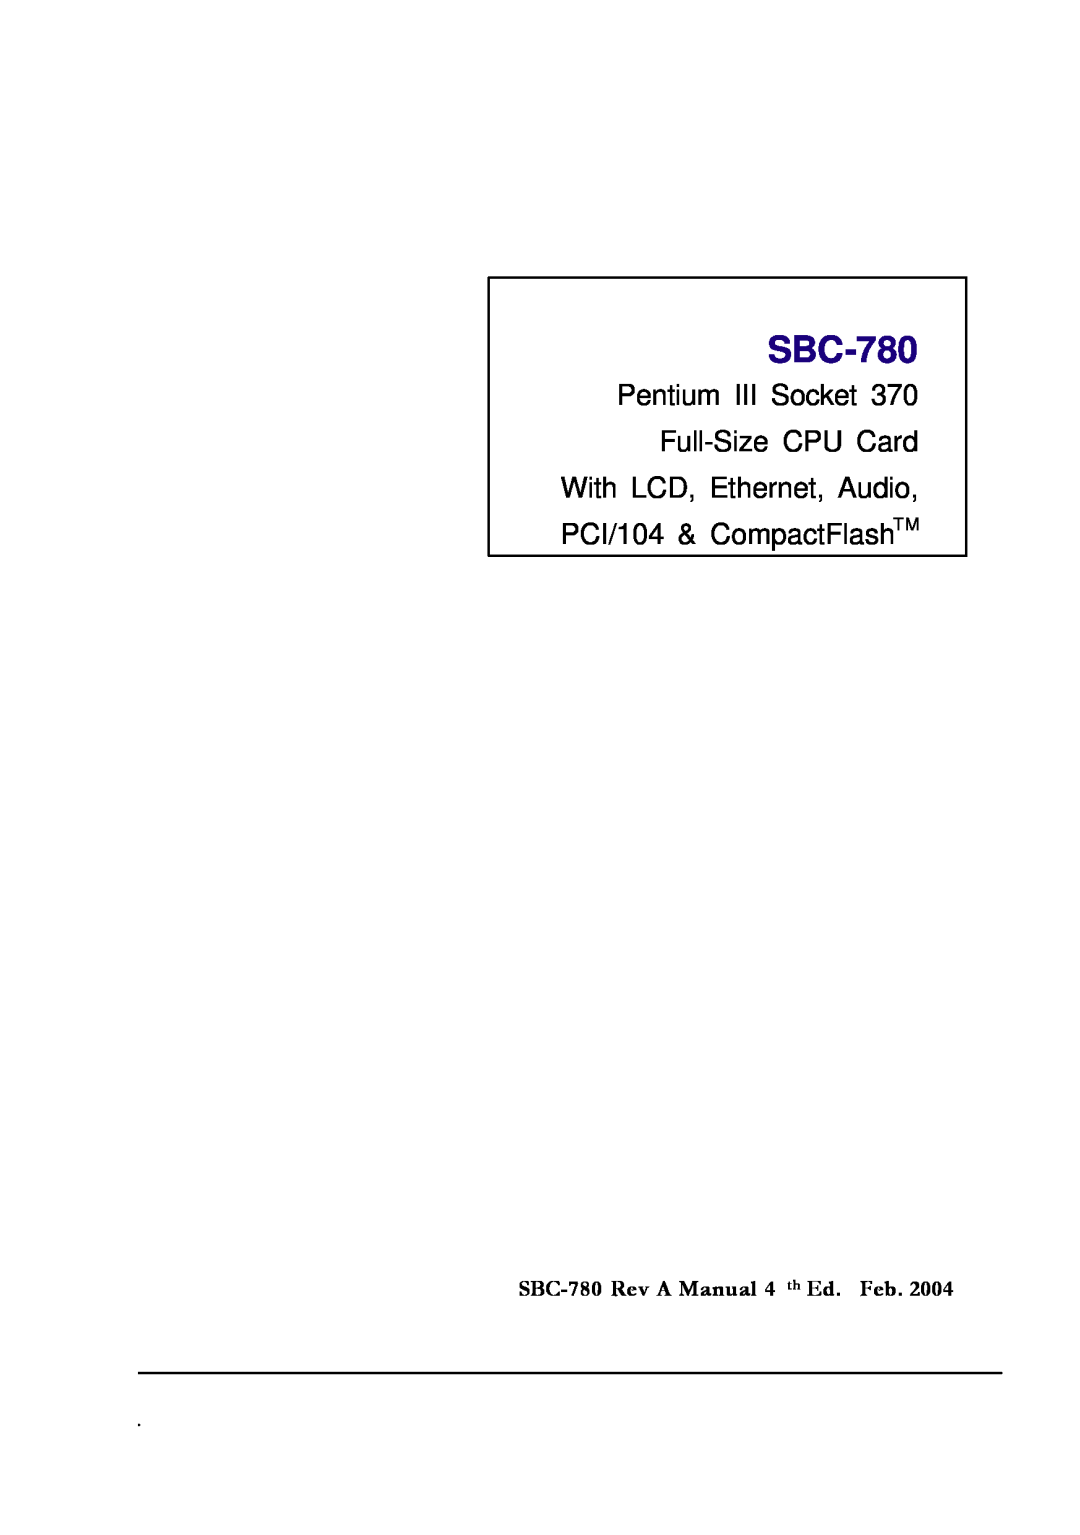 Intel manual Pentium III Socket Full-SizeCPU Card, SBC-780Rev A Manual 4 th Ed. Feb 